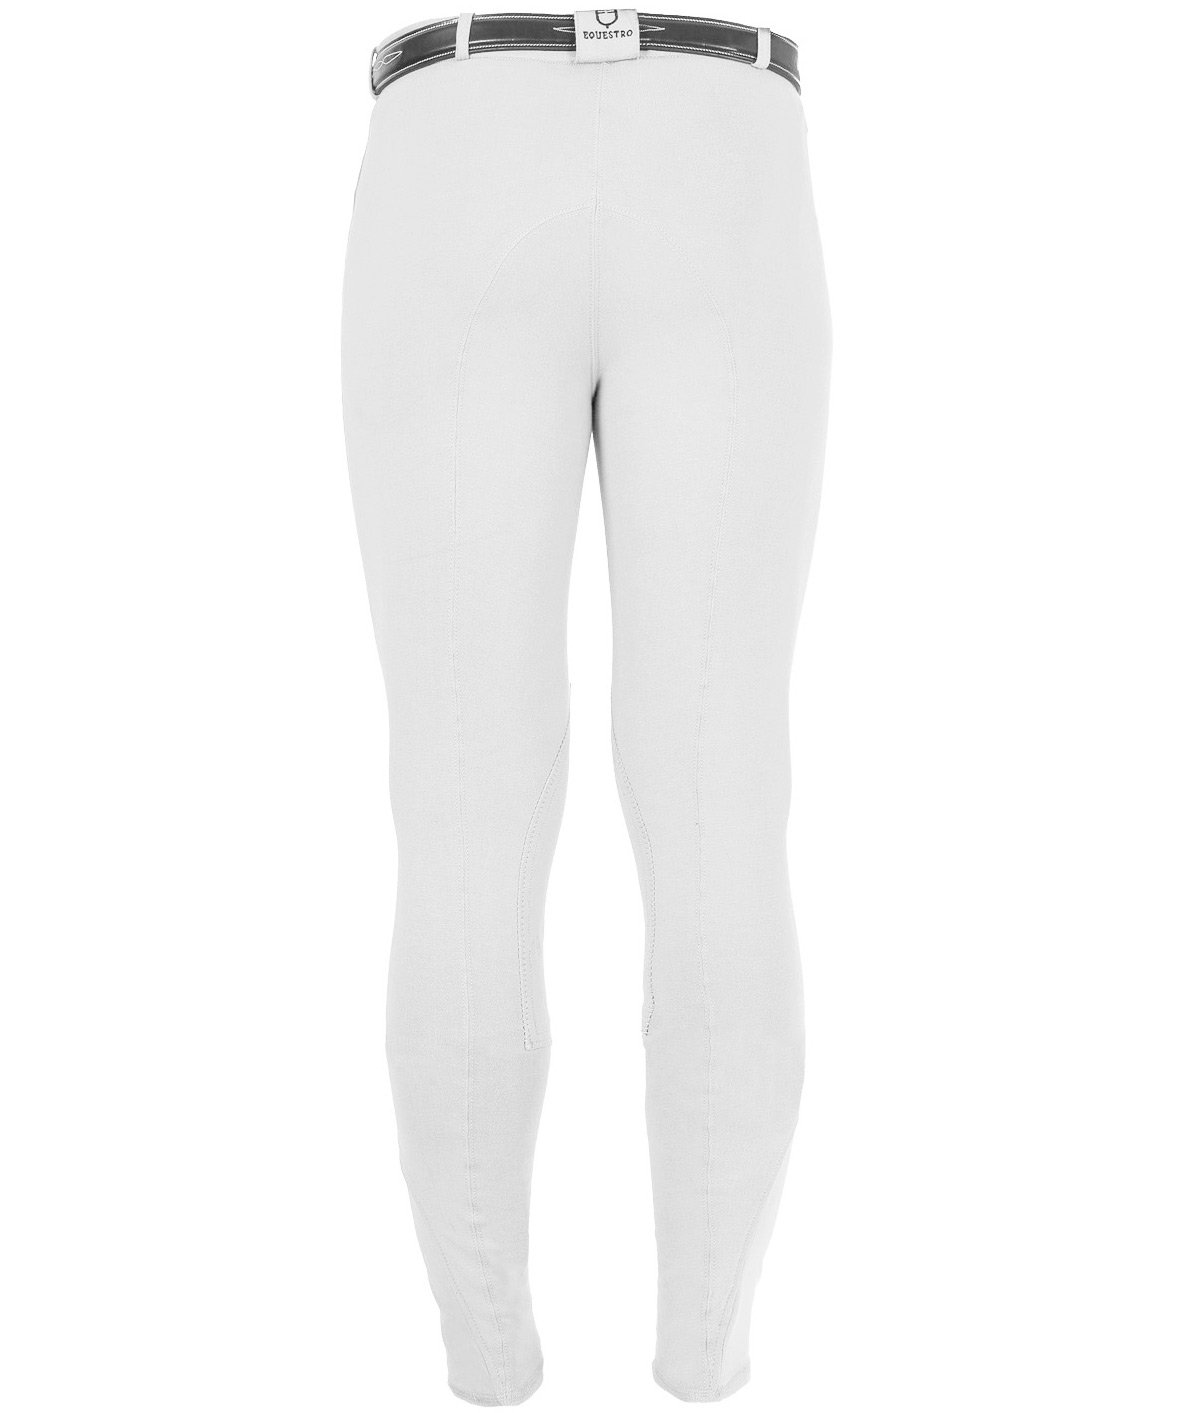 Pantalone da uomo per equitazione URANO a vita bassa in cotone leggero elasticizzato - foto 14